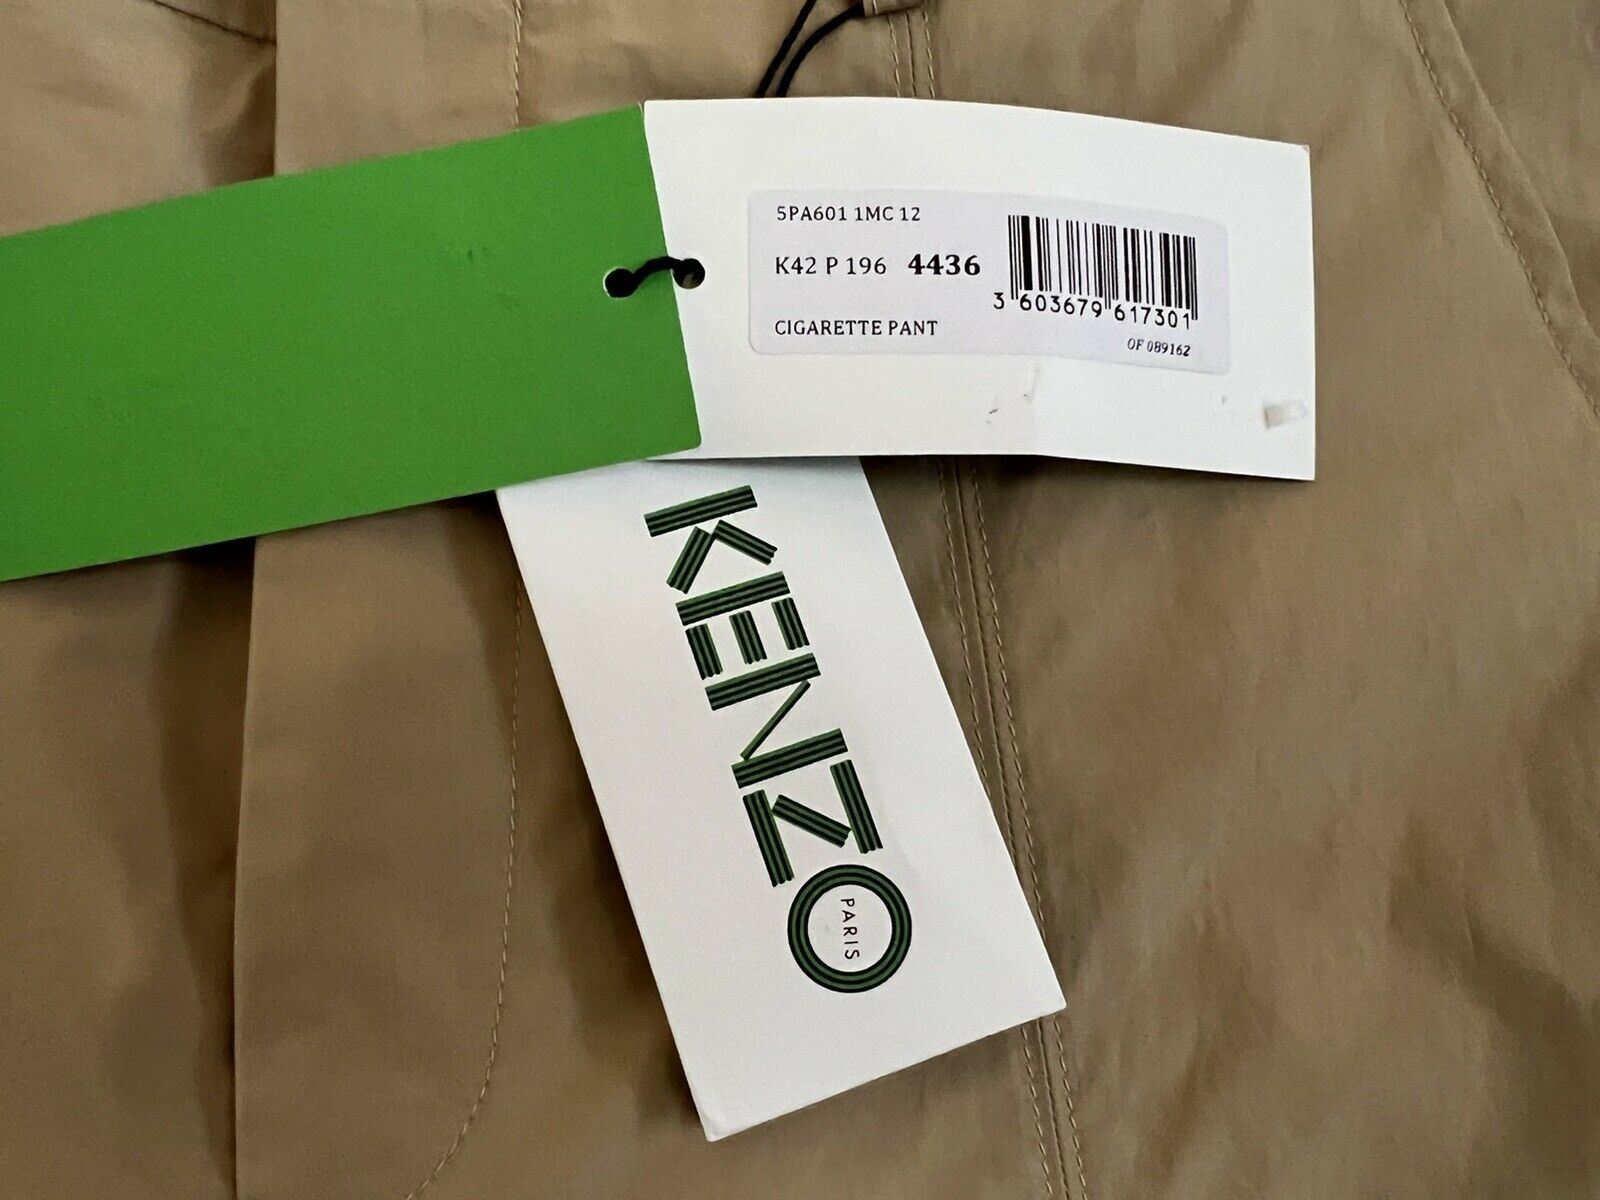 NWT $370 KENZO Men's Pale Camel Cigarette Cotton Pants Size 28 US (44 Euro)